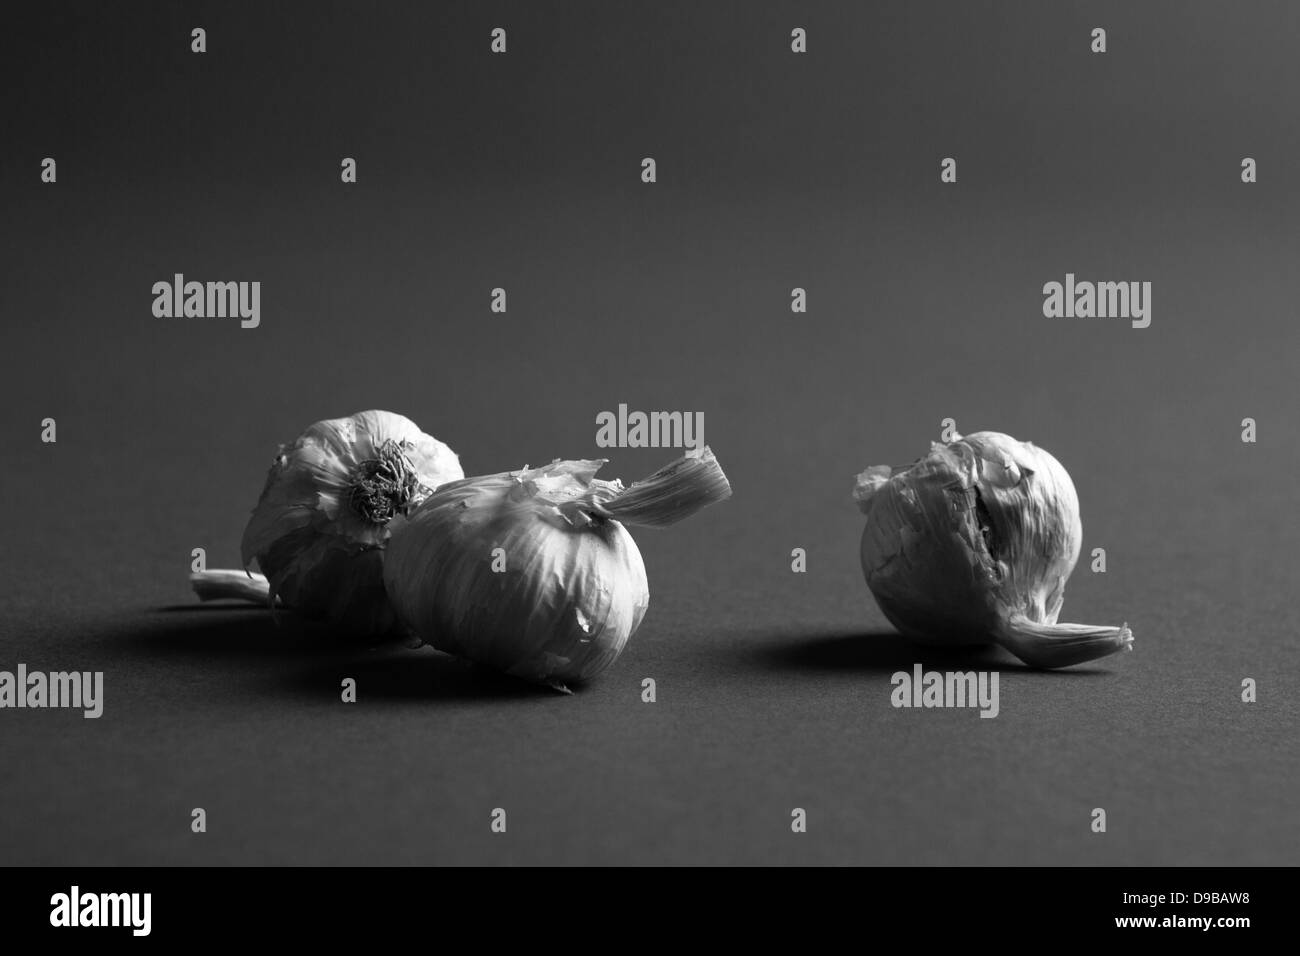 Drei Zwiebeln Knoblauch platziert auf einem dunklen Studio-Hintergrund in schwarz / weiß Stockfoto